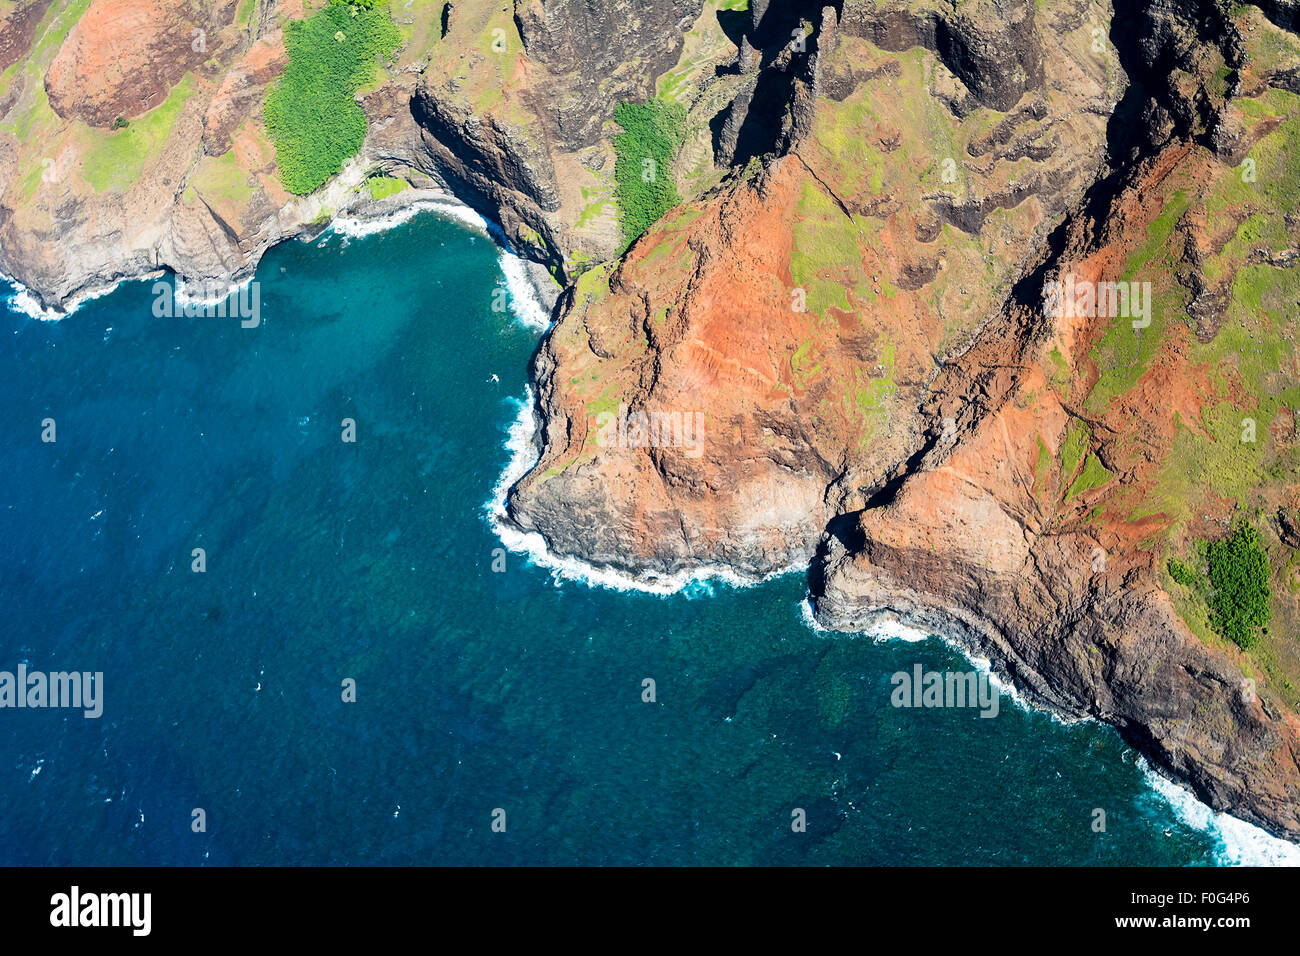 Eine Luftaufnahme der Na Pali Küste auf Kauai Hawaii in einem lebendigen, sonnigen Tag zeigt die satten Farben der malerischen Küste. N Stockfoto